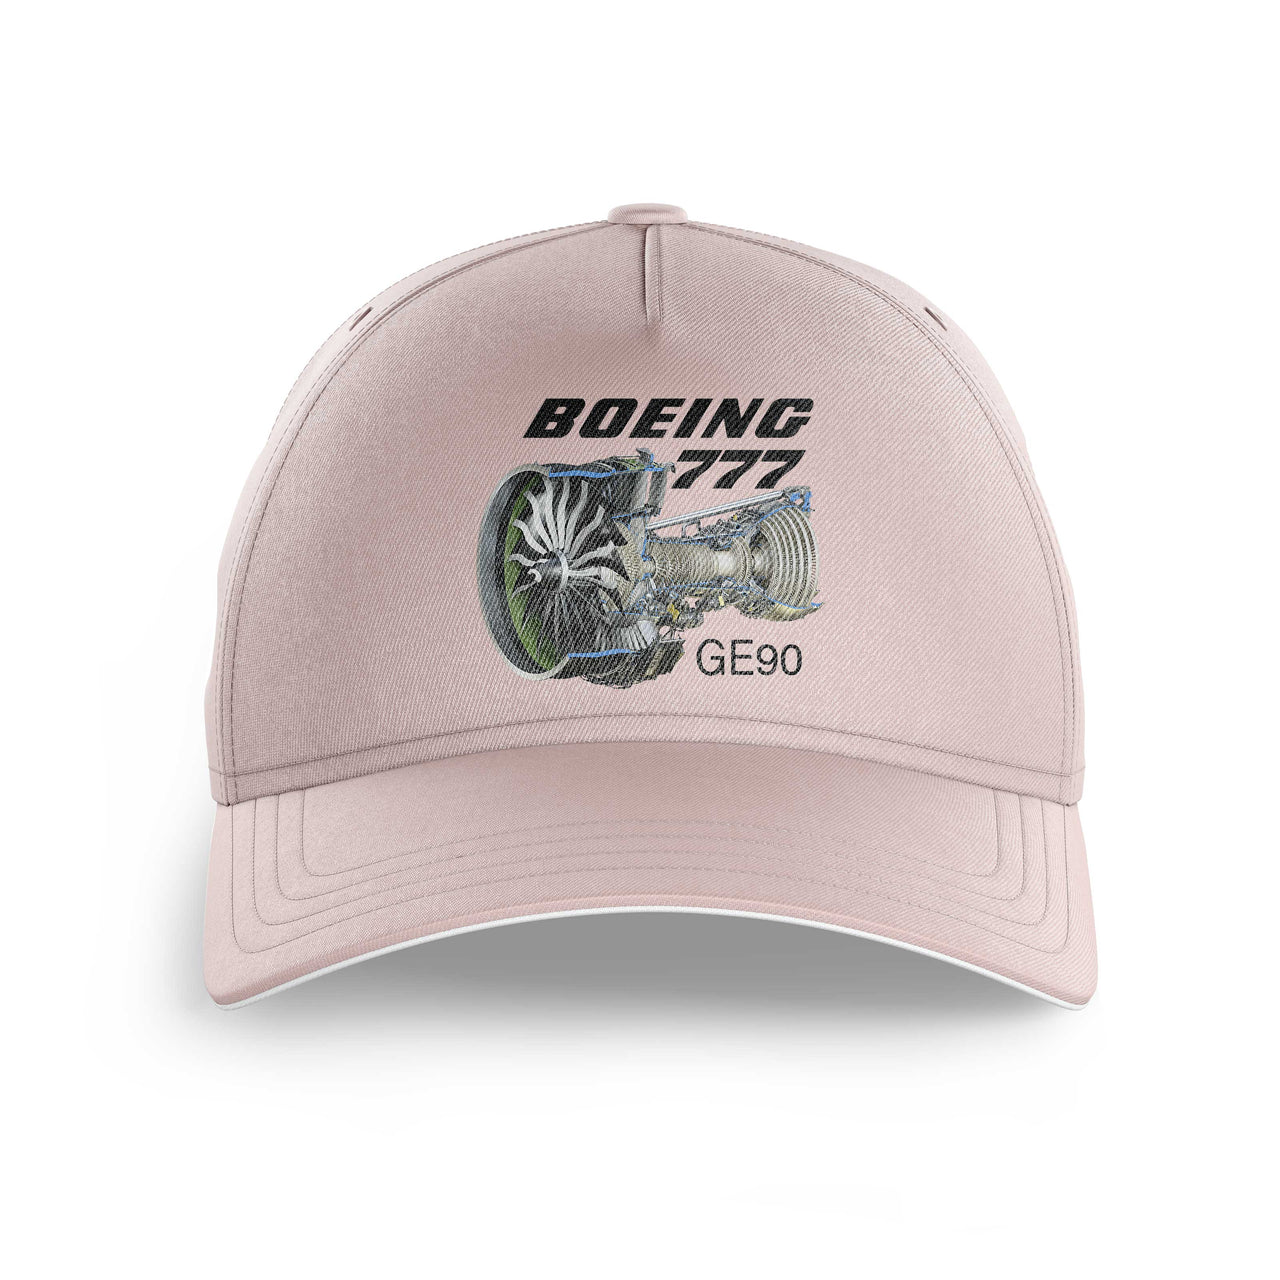 Boeing 777 & GE90 Engine Printed Hats